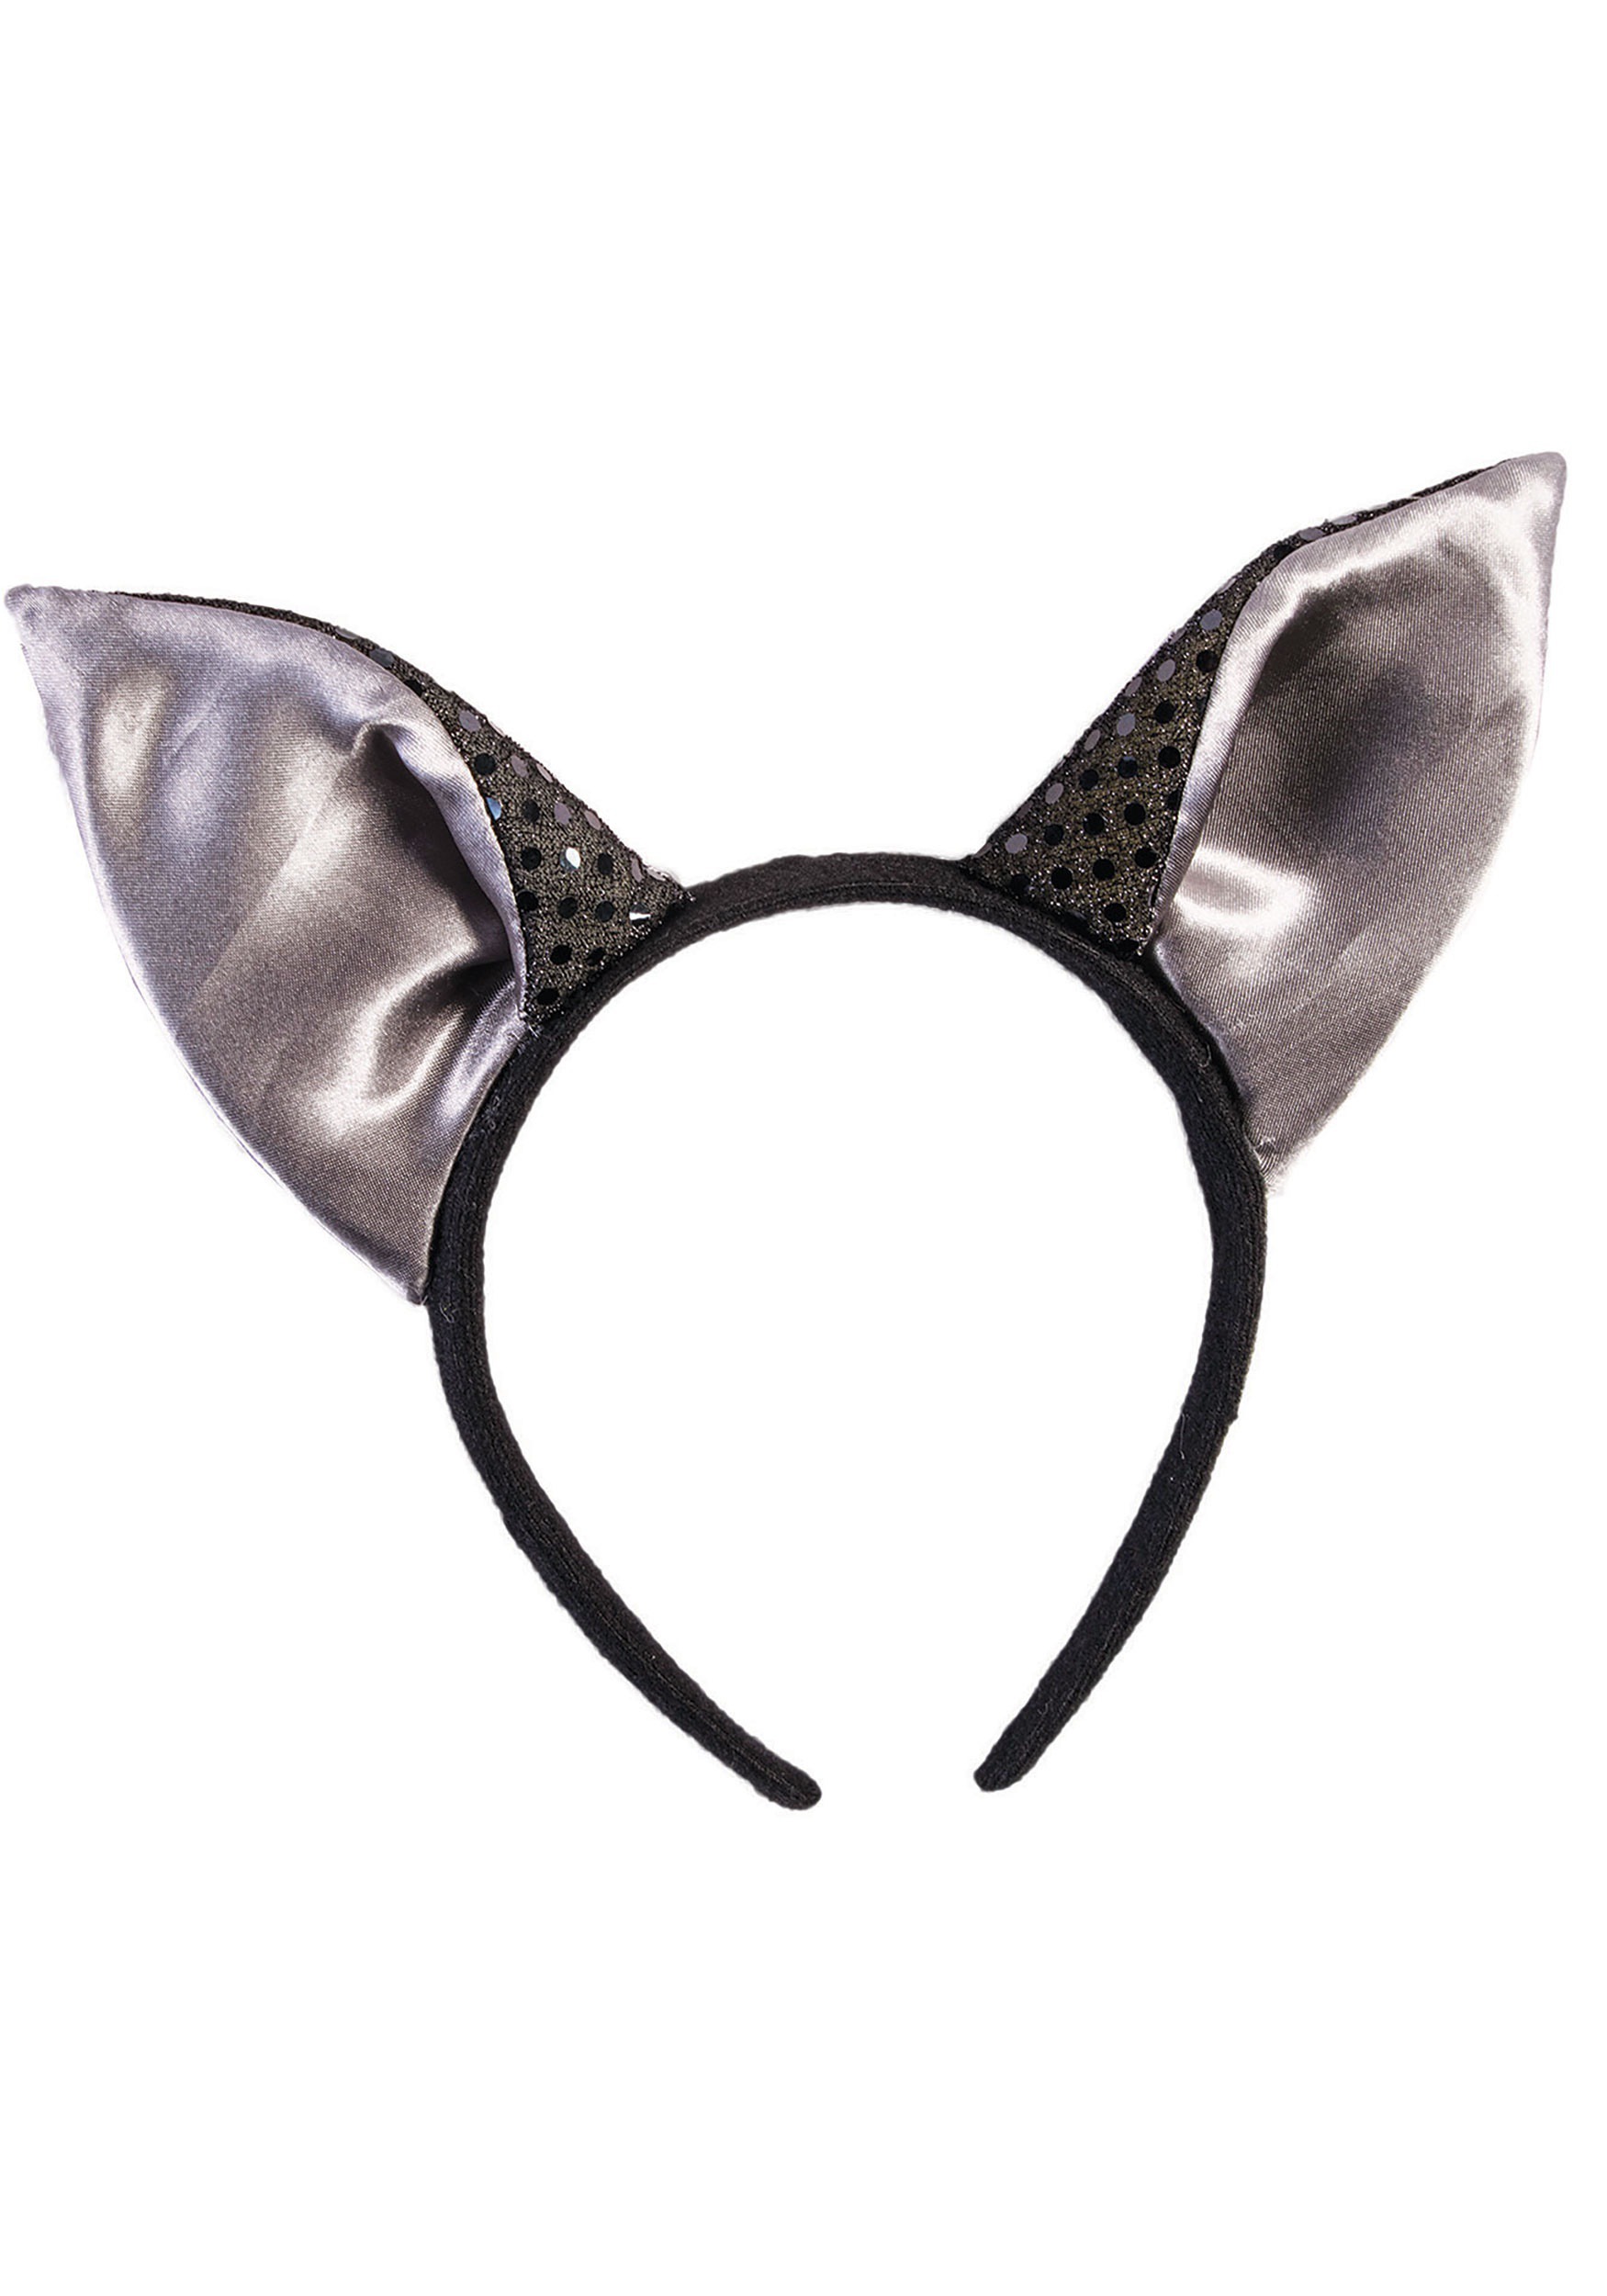 bat-ears-headband-accessory